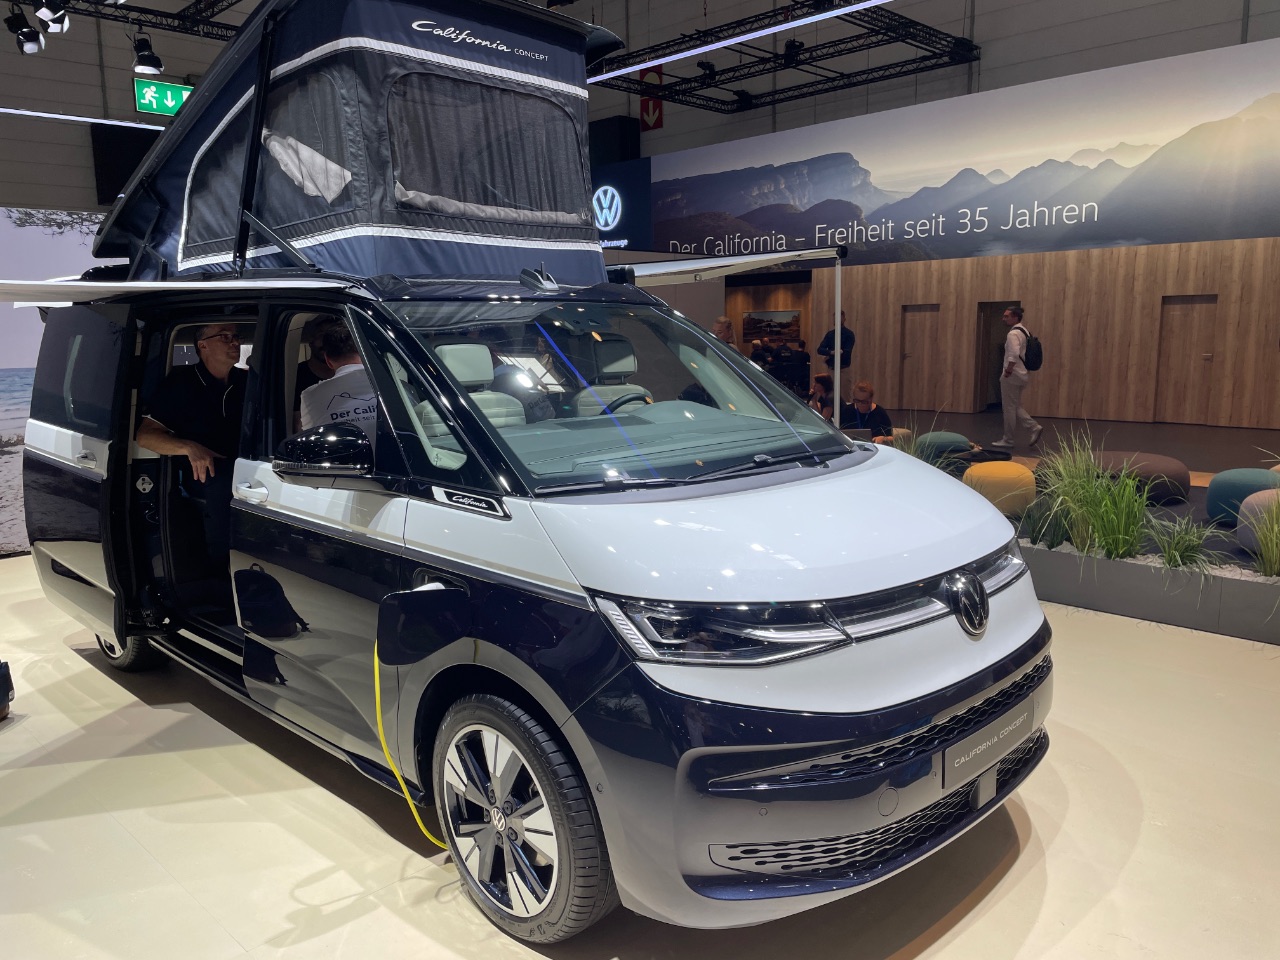 VW California (Concept) - echte Alternative zum Dieselantrieb im Campervan?